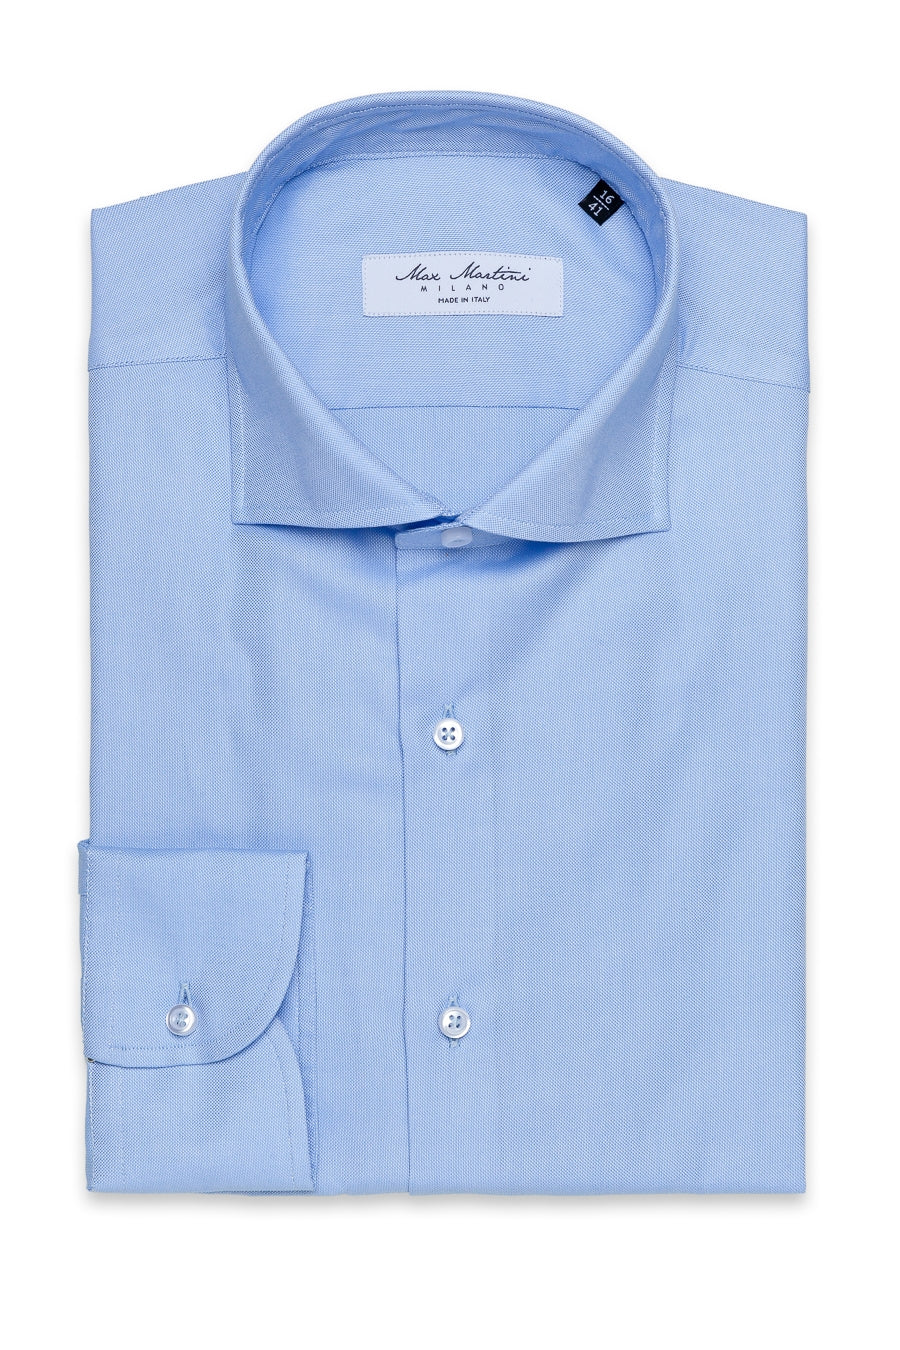 Light Blue Shirt 100% Cotton